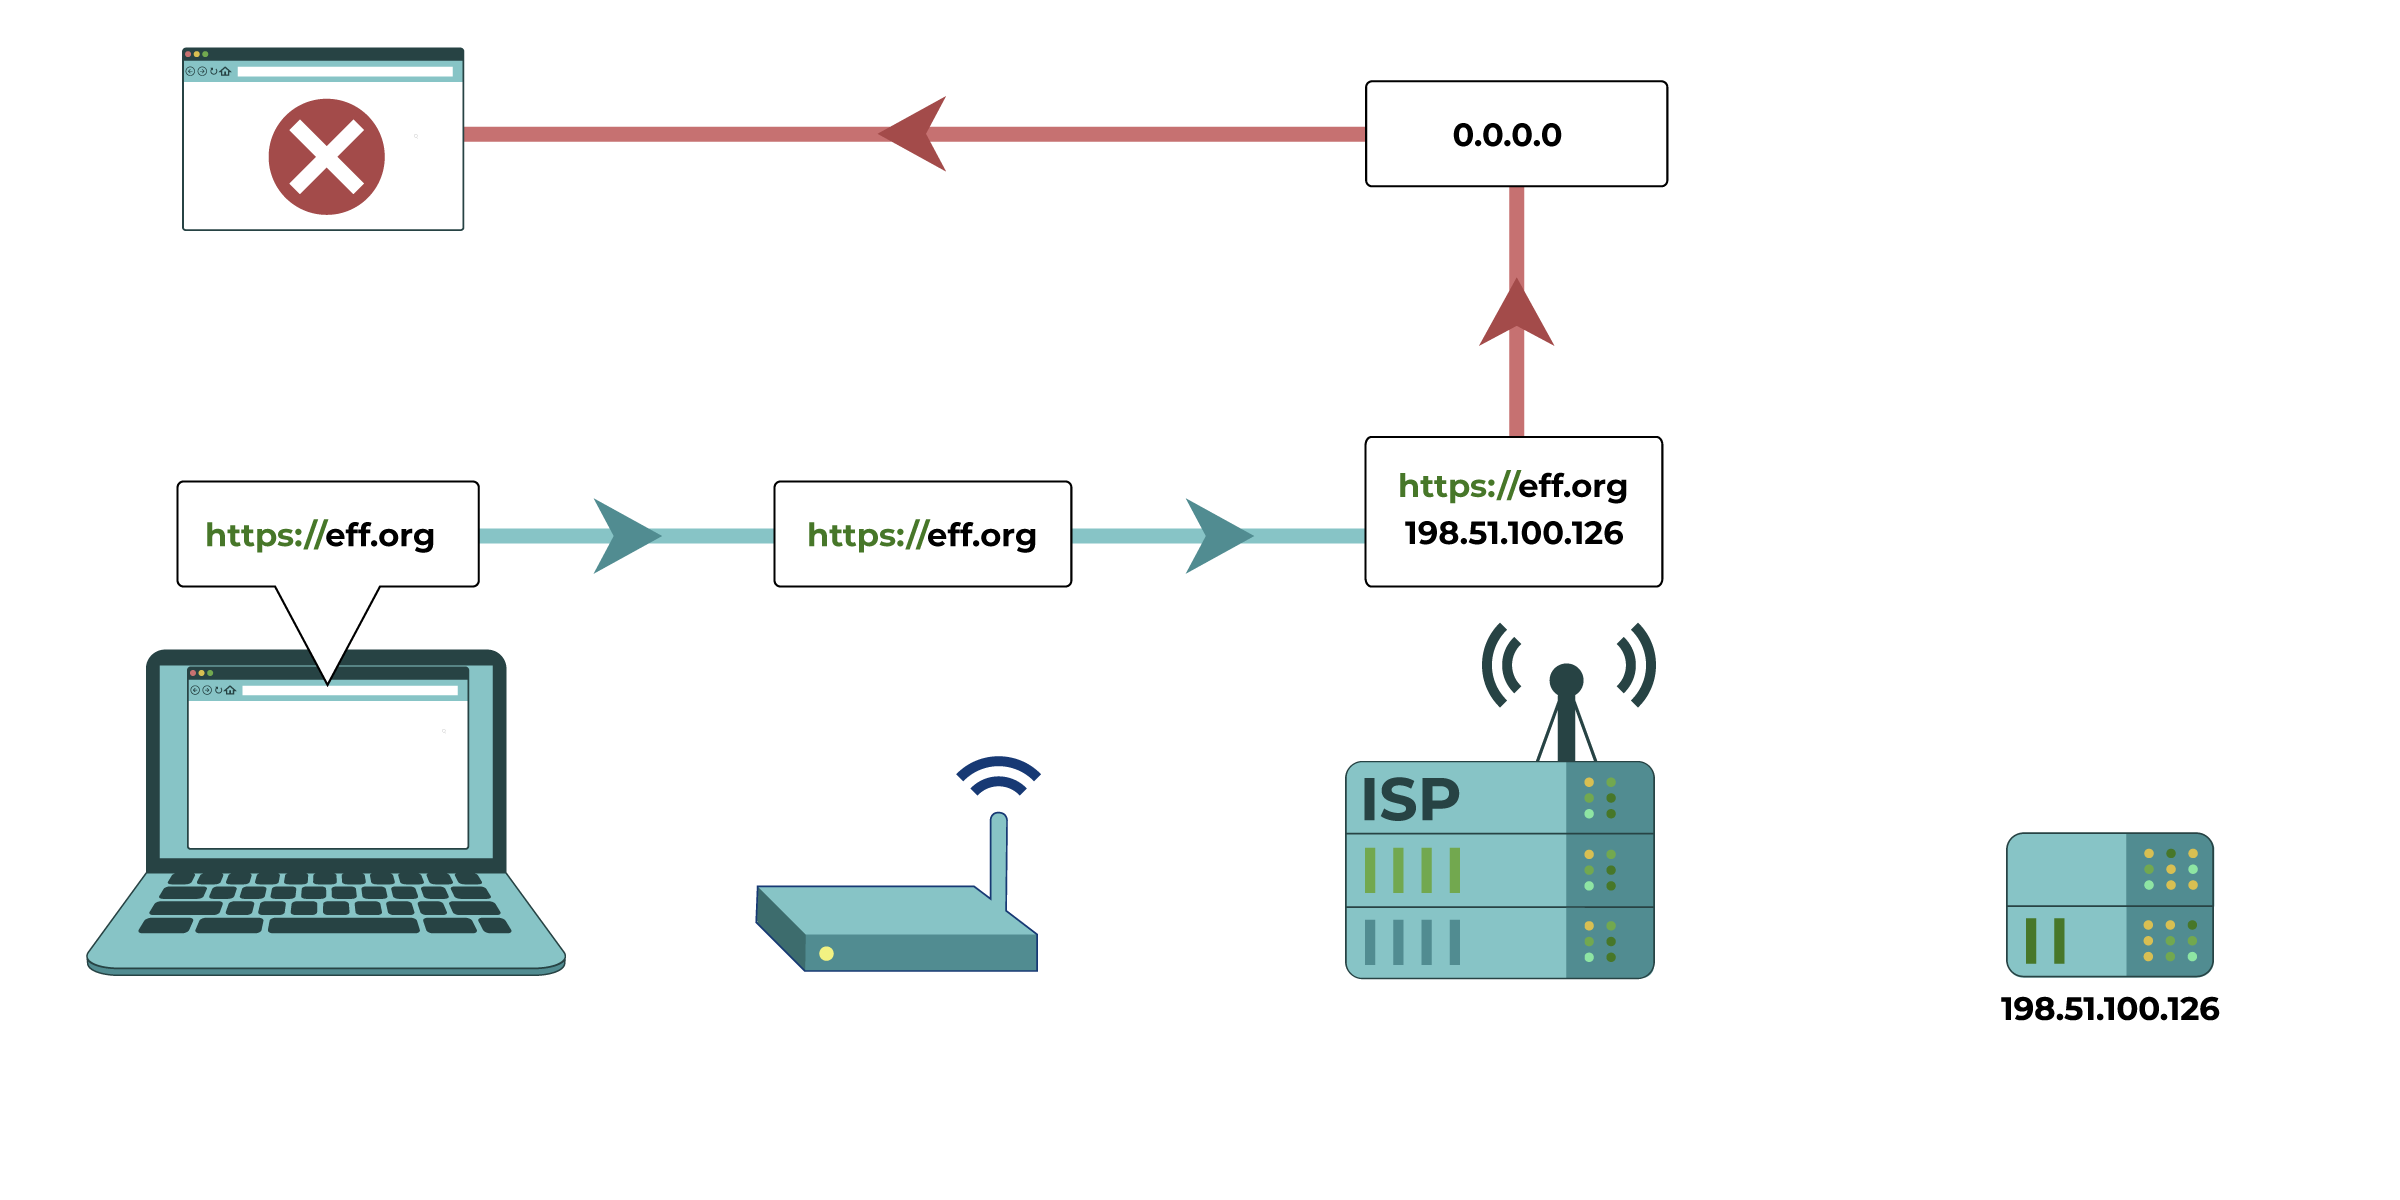 En este diagrama, la solicitud de la dirección IP de eff.org se modifica a nivel de Proveedor de Servicios de Internet. El ISP interfiere con el resolver del DNS, y la dirección IP es redirigida para dar una respuesta incorrecta o sin respuesta.